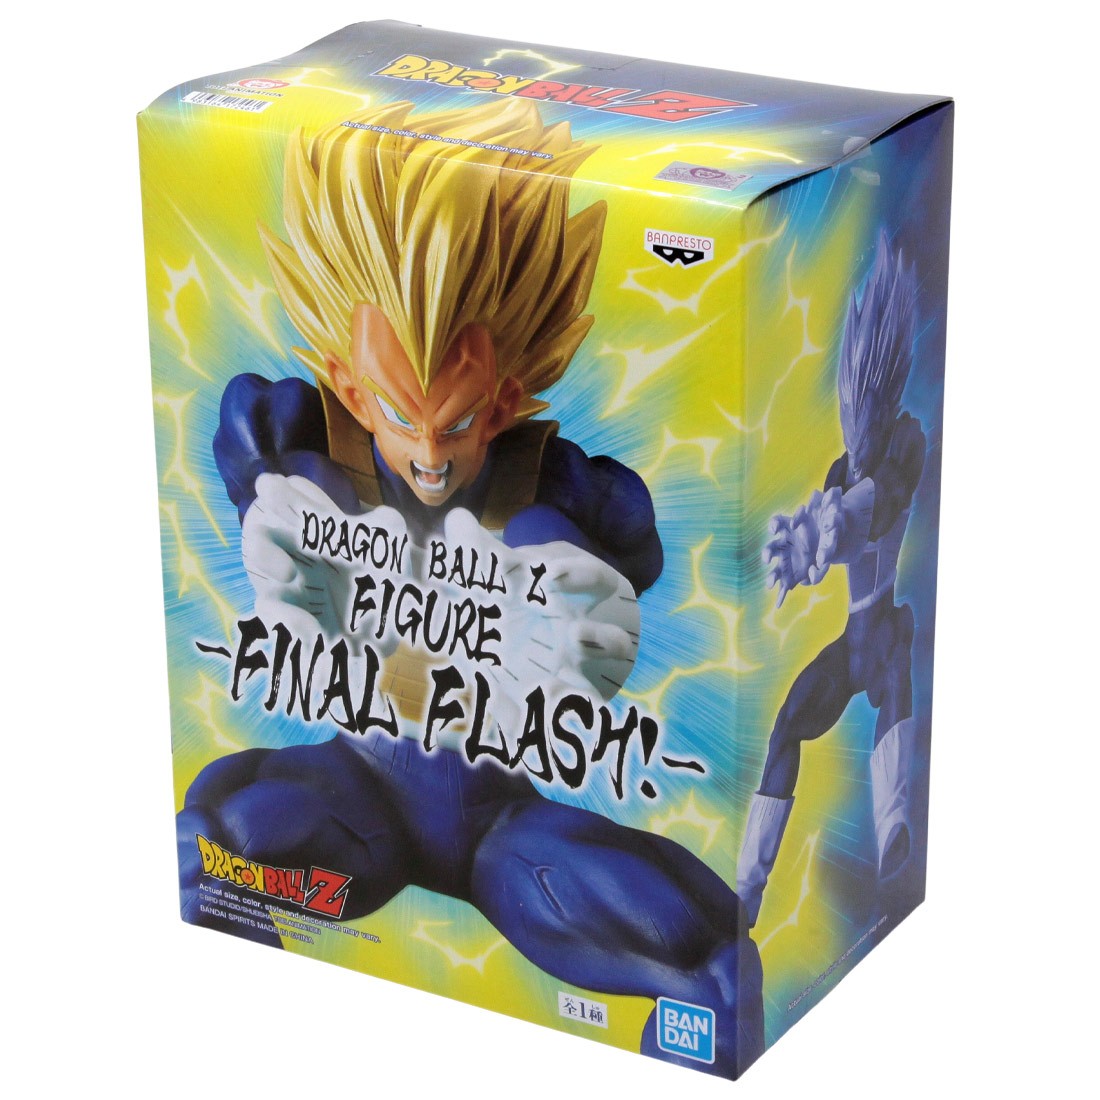 Final Flash Vegeta Super Saiyan DX Pvc Figure Banpresto DRAGON BALL Z 